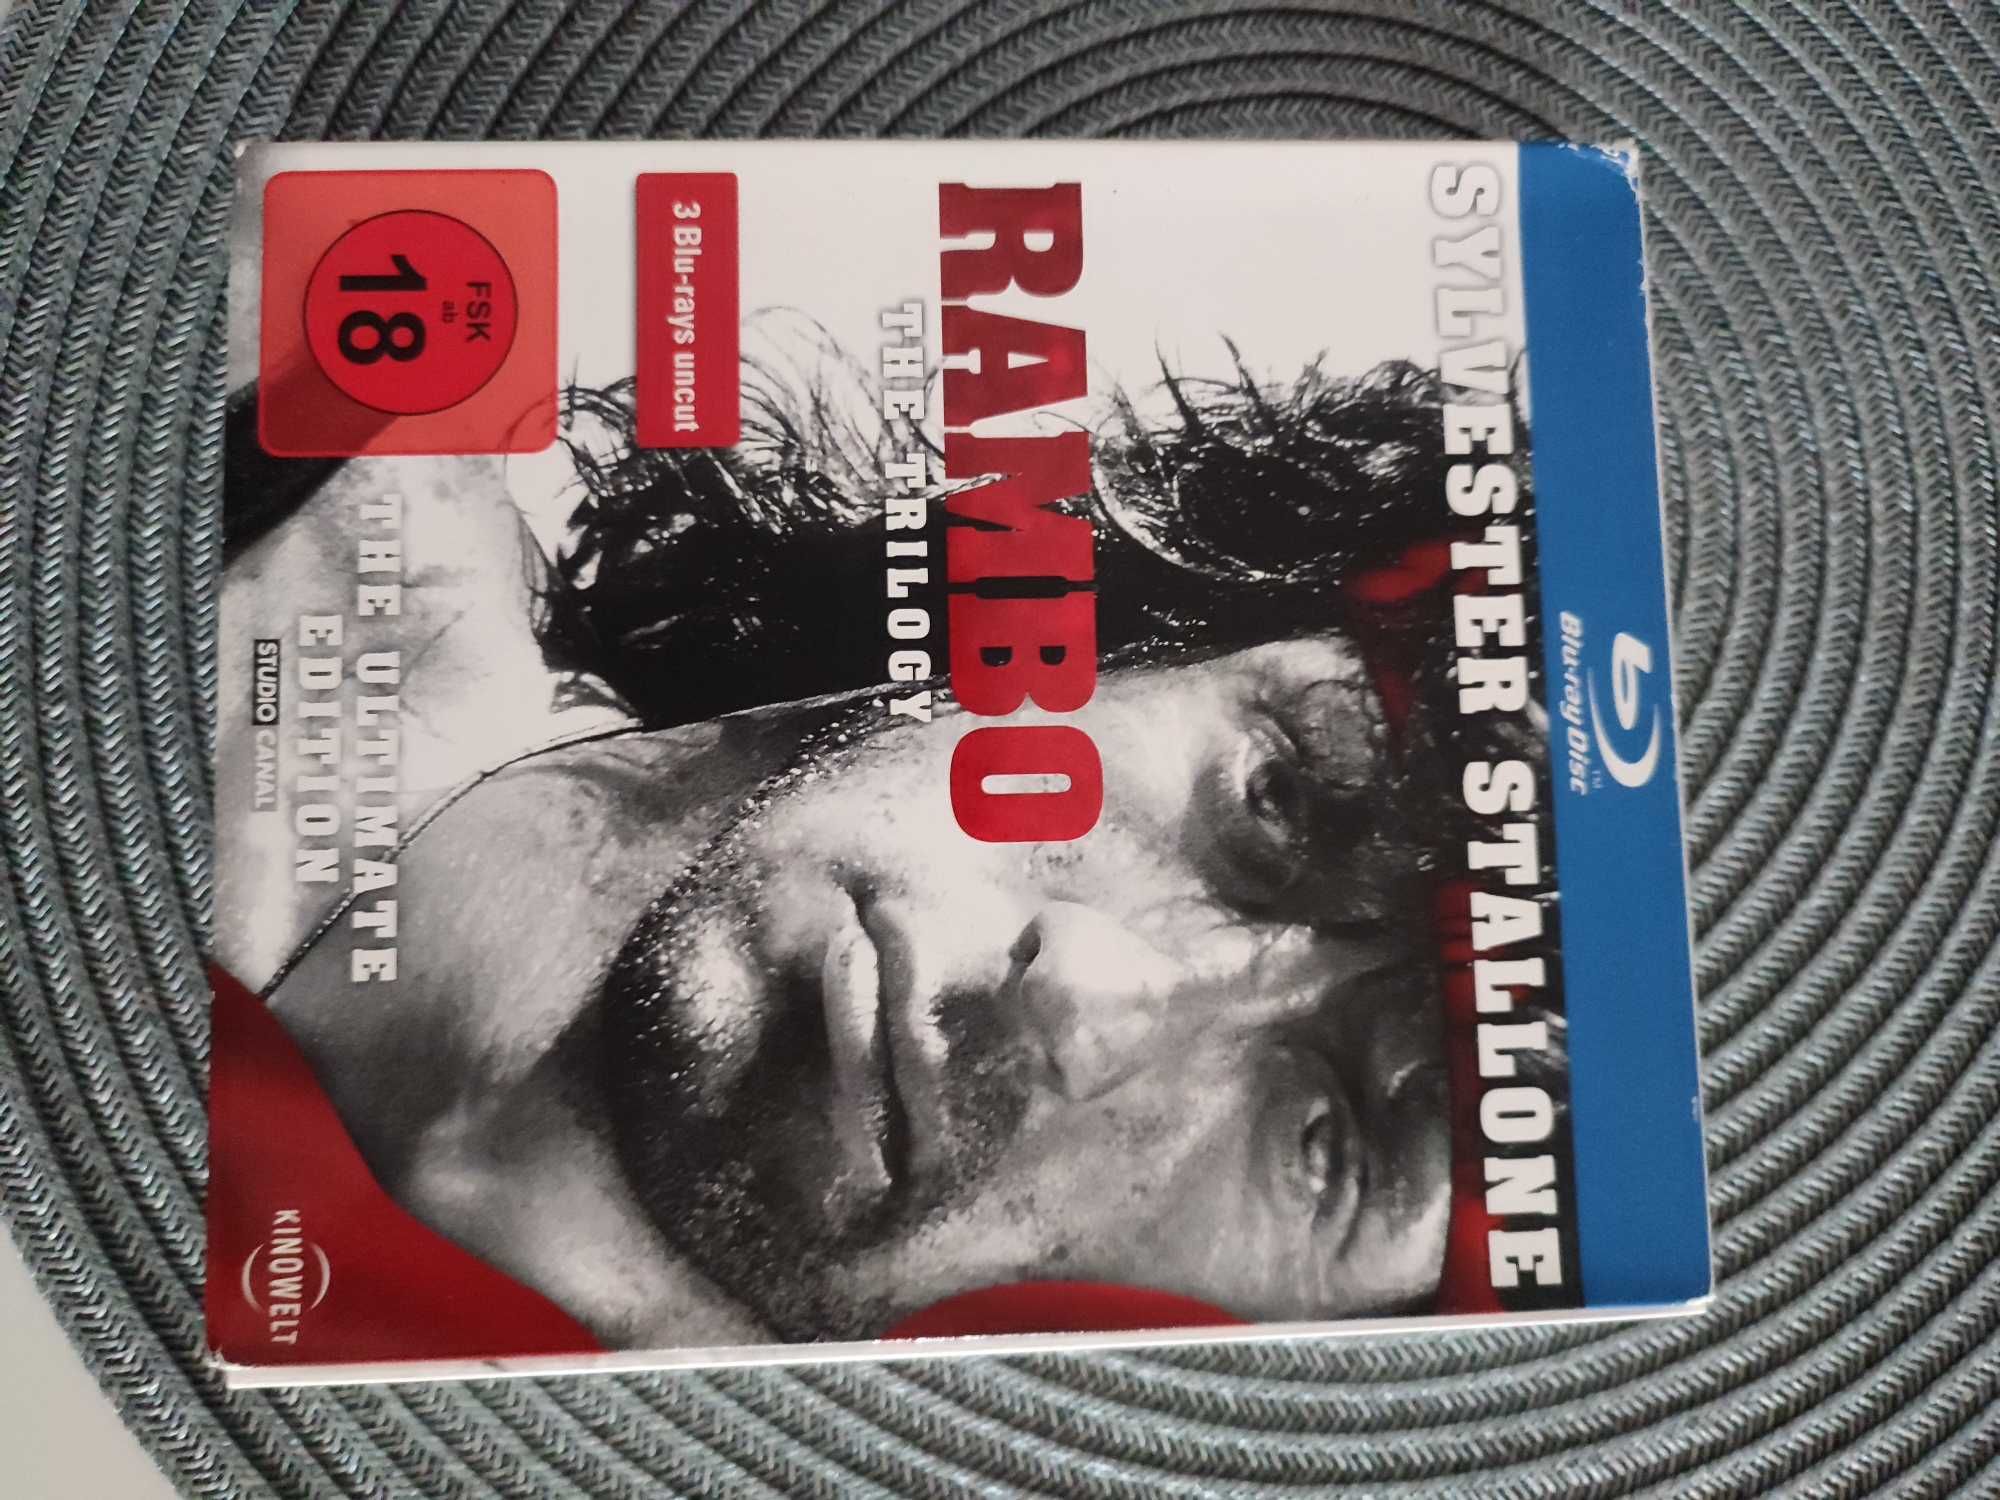 Blu-ray filmy Rambo 1-3 Edycja Specjalna